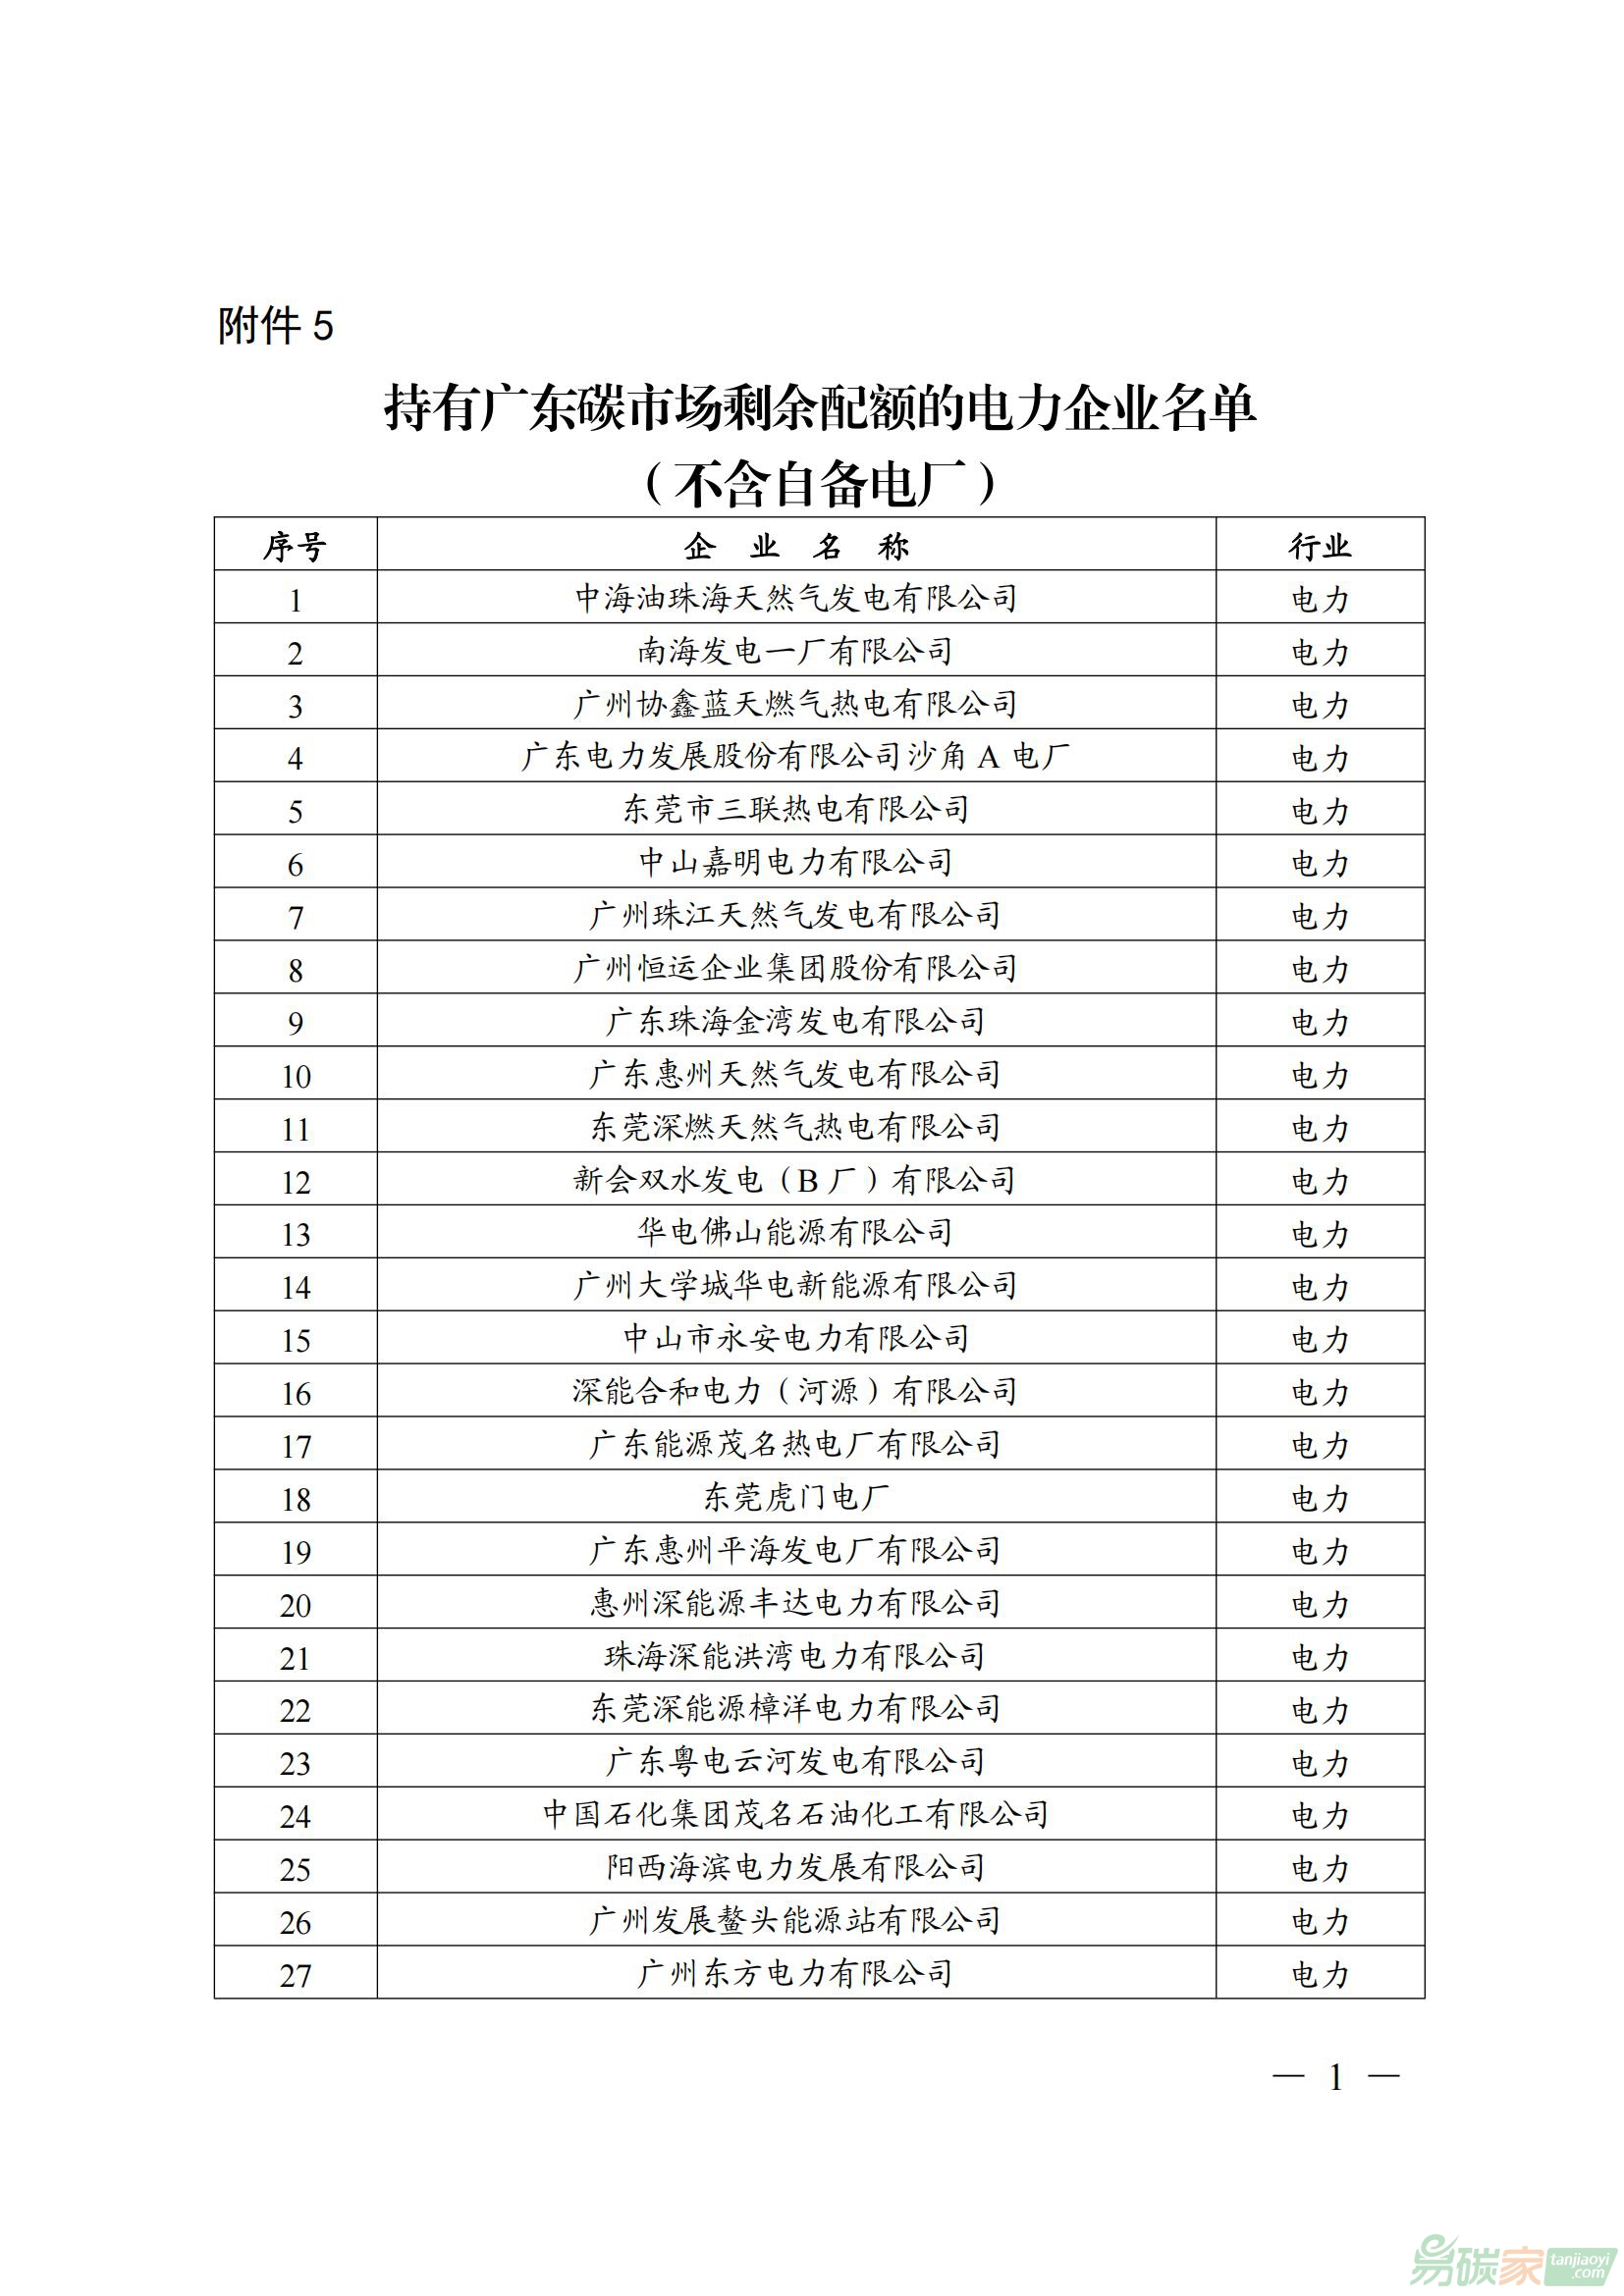 持有广东碳威廉希尔体育剩余配额的电力企业名单（不含自备电厂）